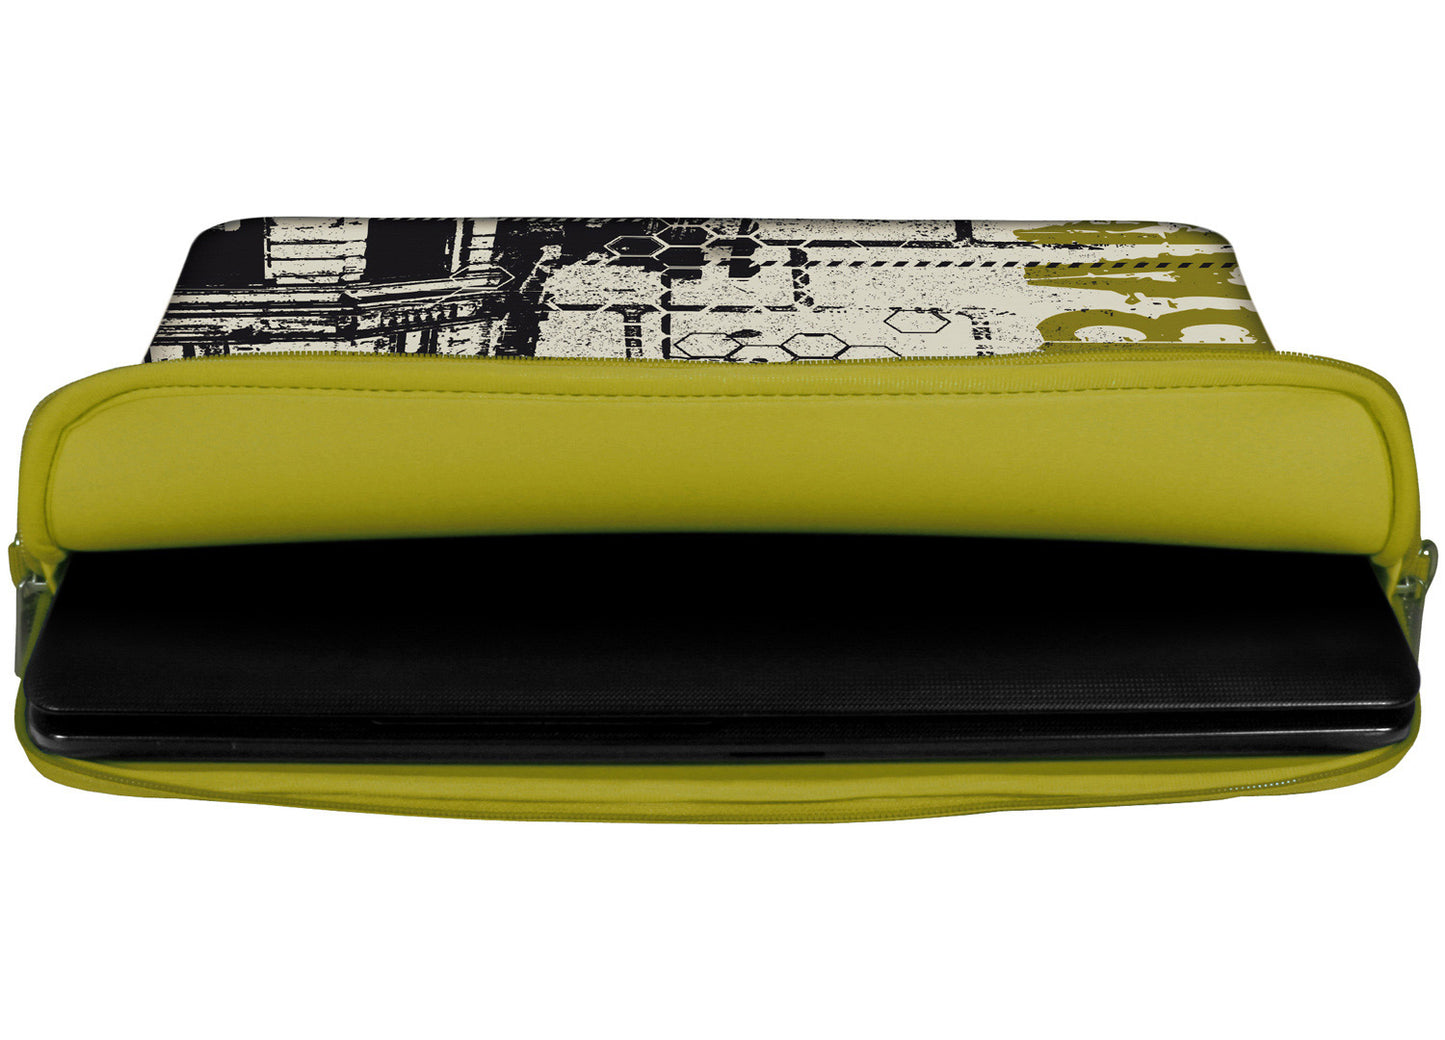 Innenansicht mit Schutzlippen der LS152 Urban Designer Laptop Tasche olivfarben aus wasserabweisendem Neopren